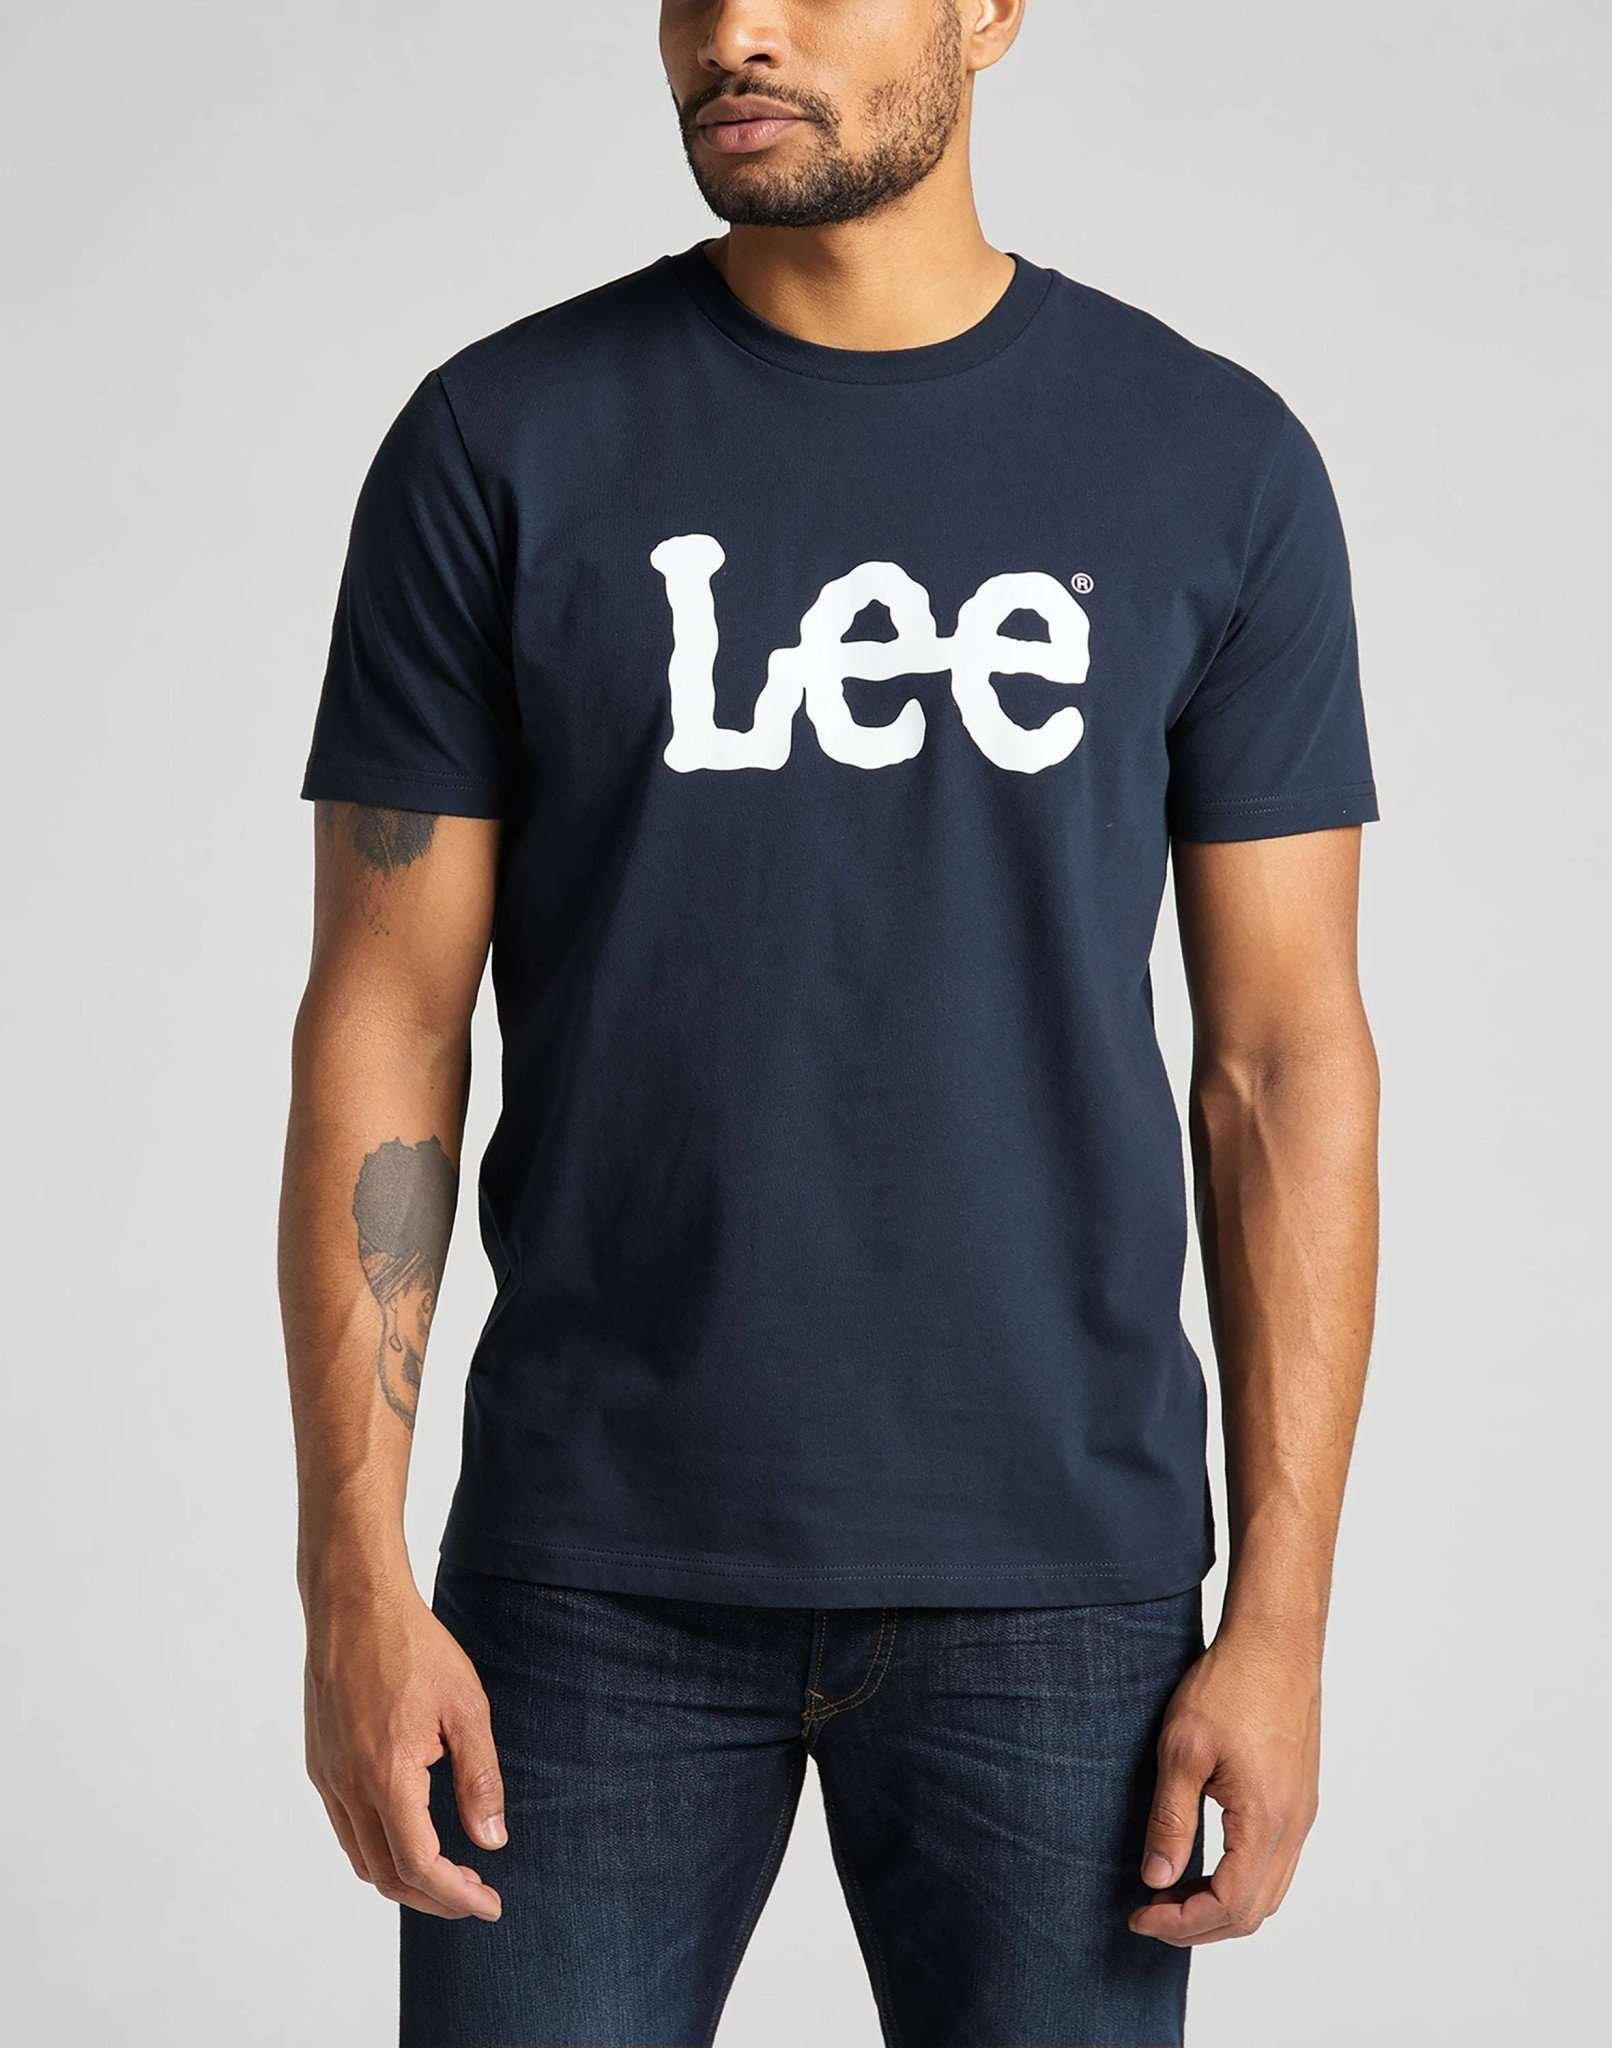 T-shirt Wobbly Logo Herren Marine M von Lee